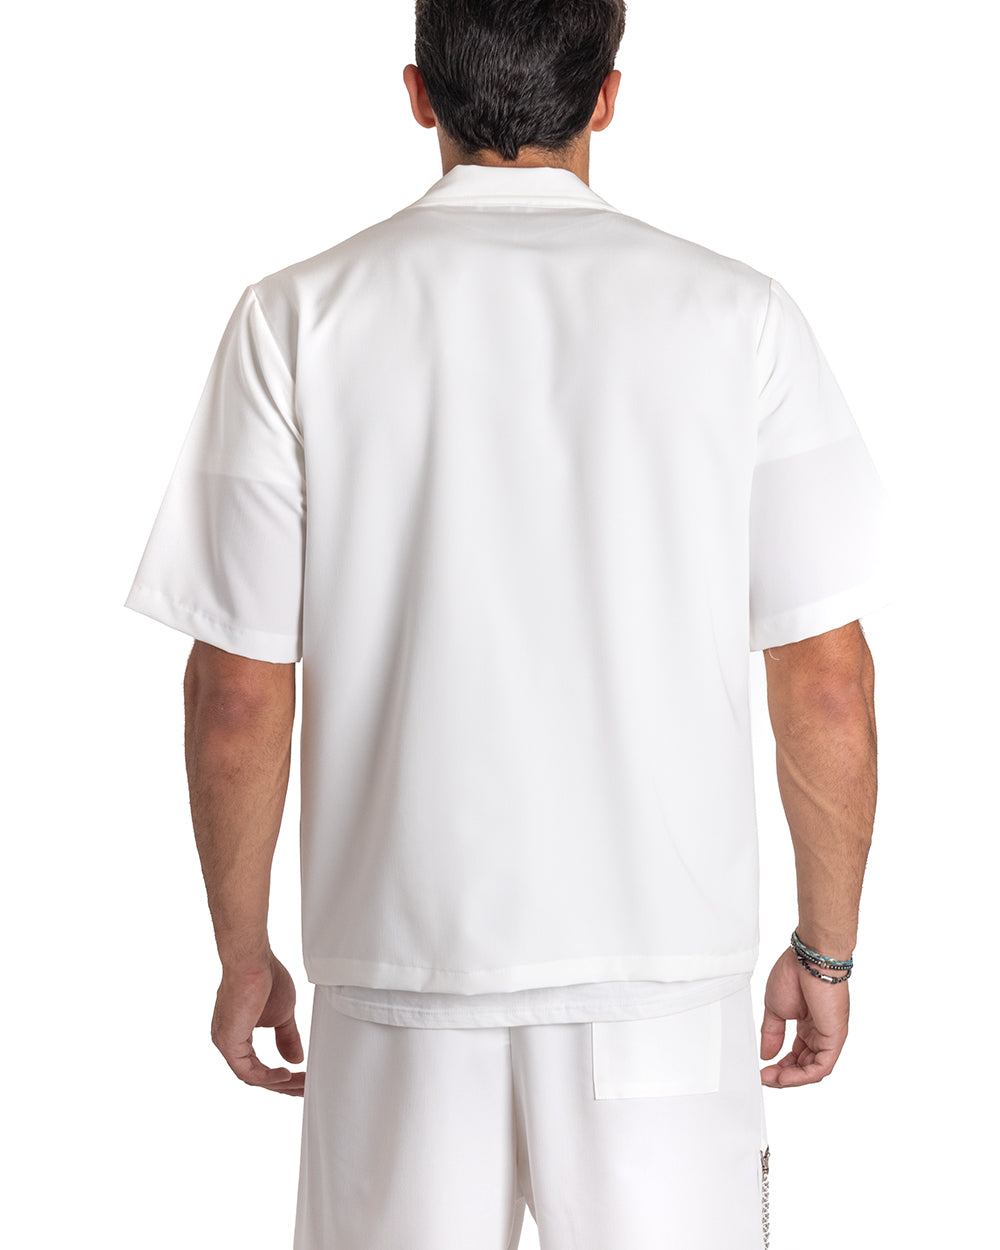 Completo Set Coordinato Uomo Viscosa Camicia Giacca Con Colletto Bermuda Outfit Bianco GIOSAL-OU2130A